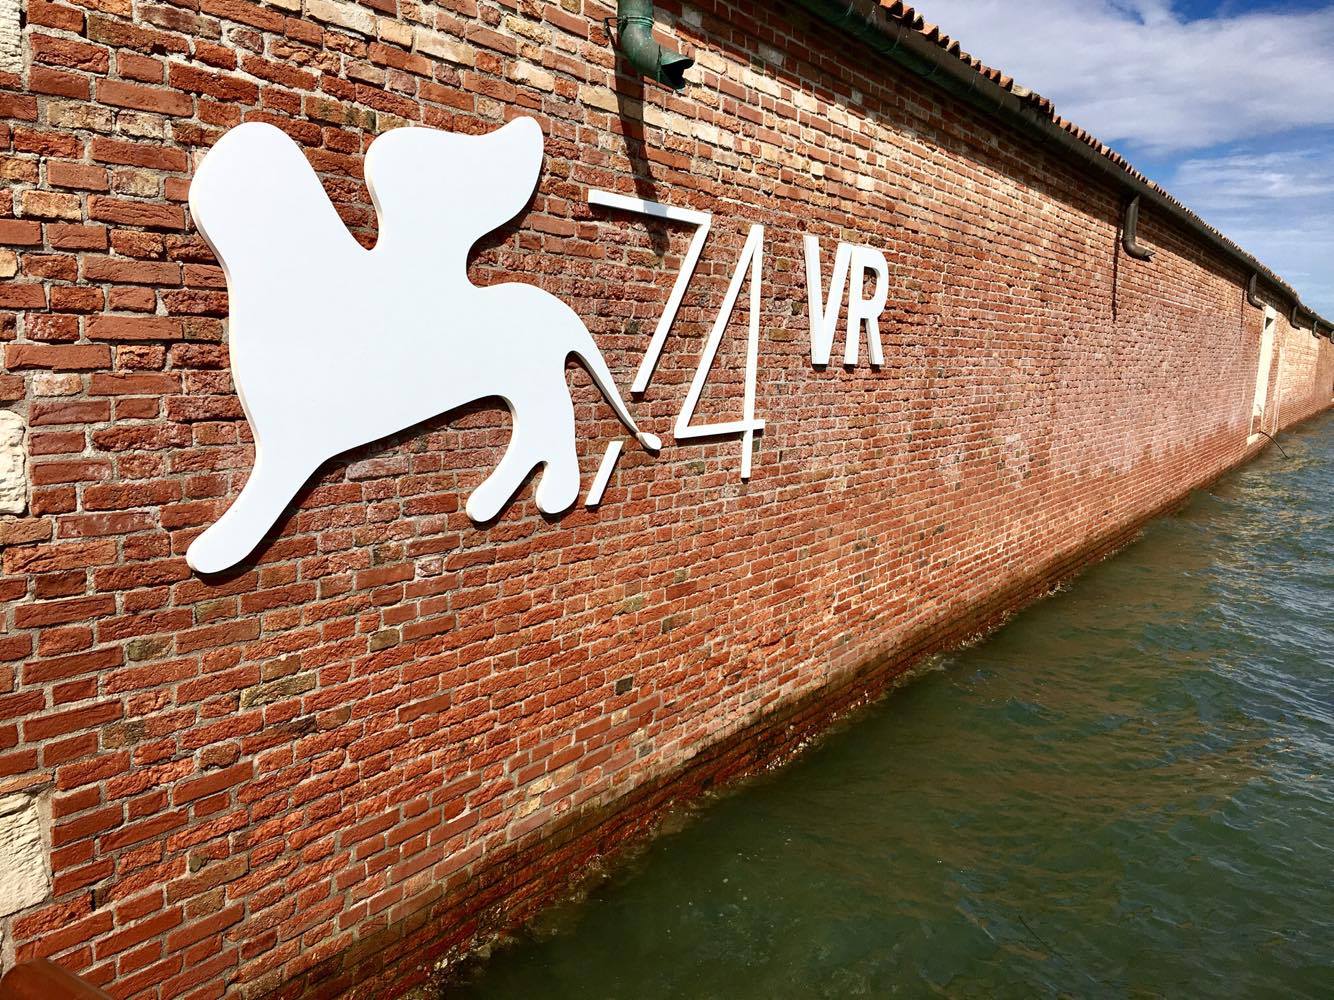 14 - L'isola del Lazzaretto interamente dedicata alla VR (Virtual Reality), dove si possono provare esperienze multisensoriali nel campo della sperimentazione cinematografica